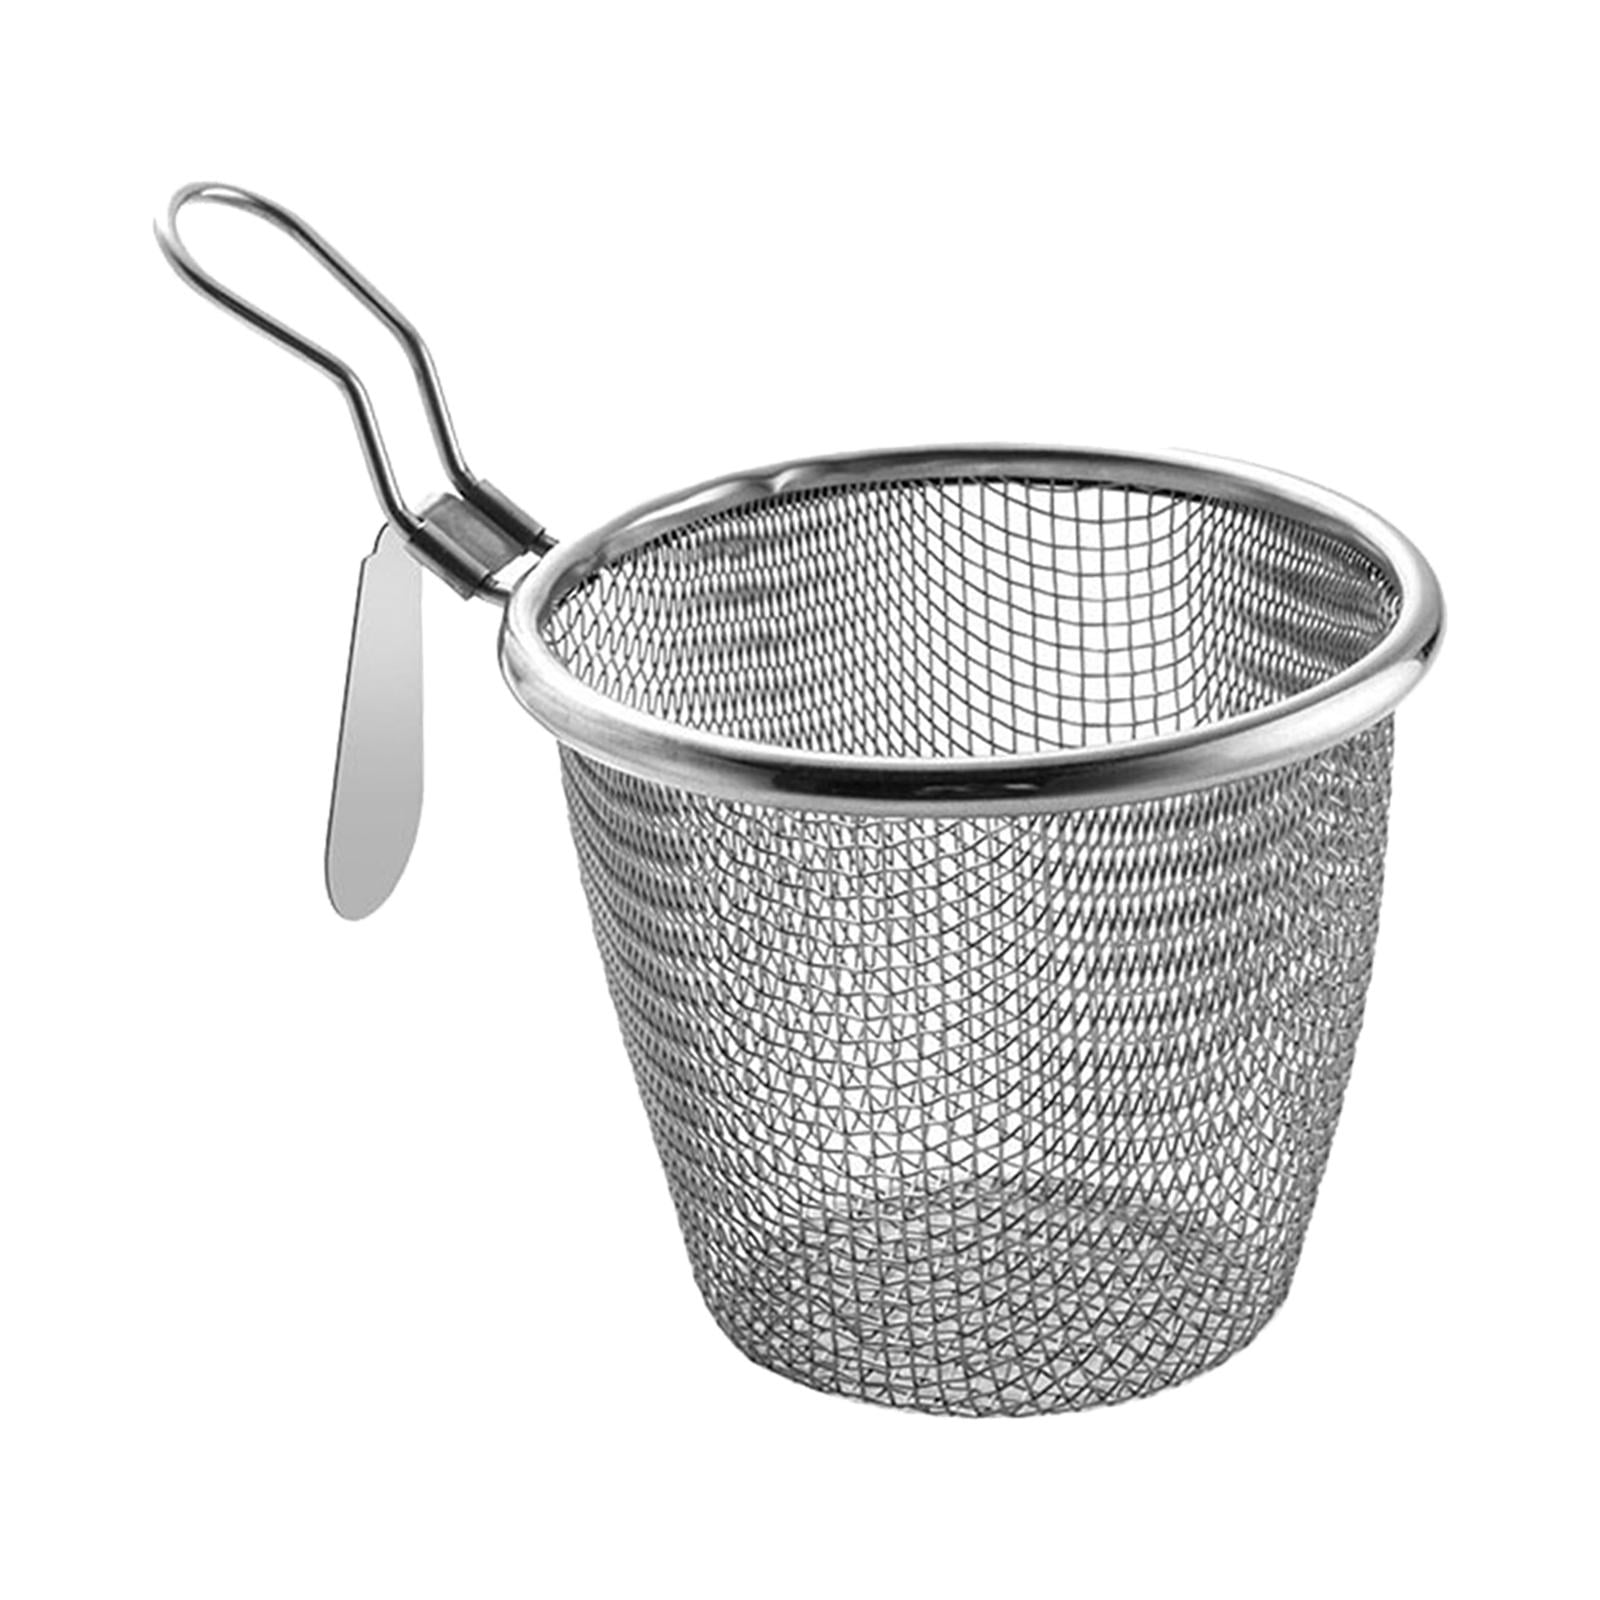 mesh pasta basket 2x Hot Pot Side Colander Hot- Pot Separation Sieve